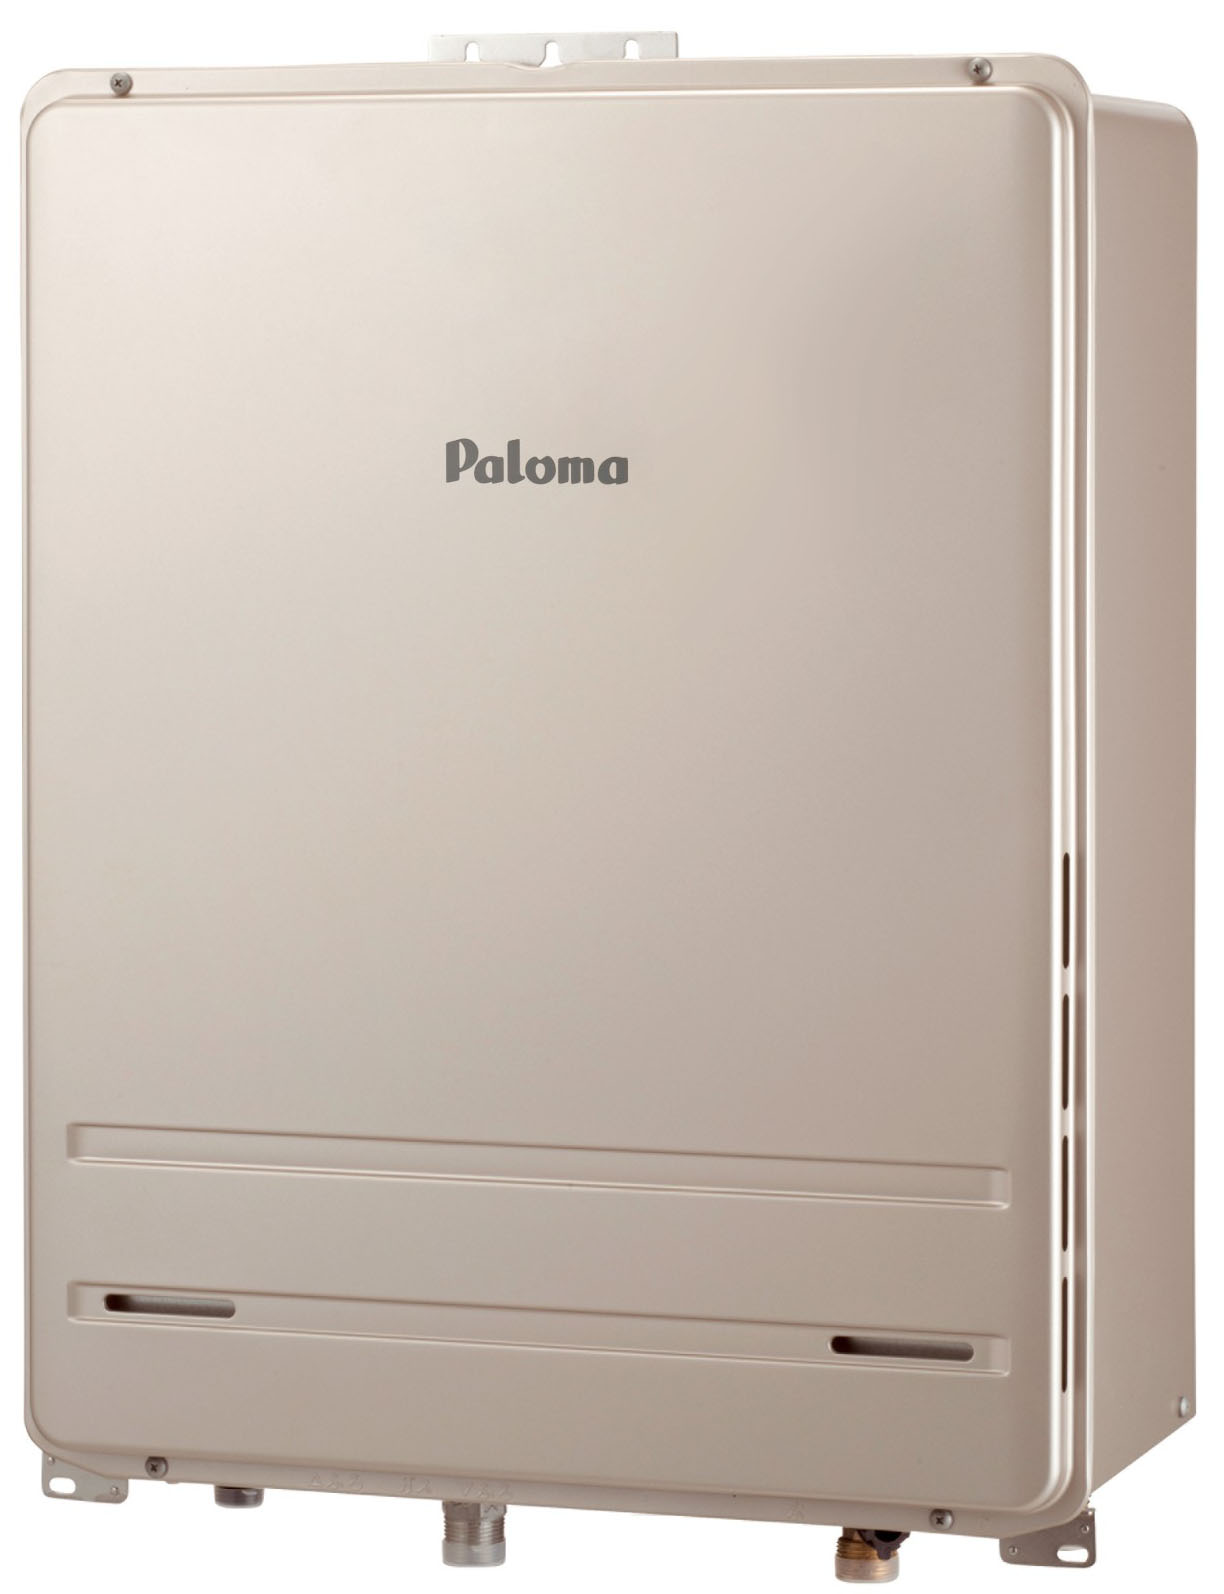 Paloma パロマ FH-E2021SAWL-13A ガス給湯器 都市ガス用 BRIGHTS